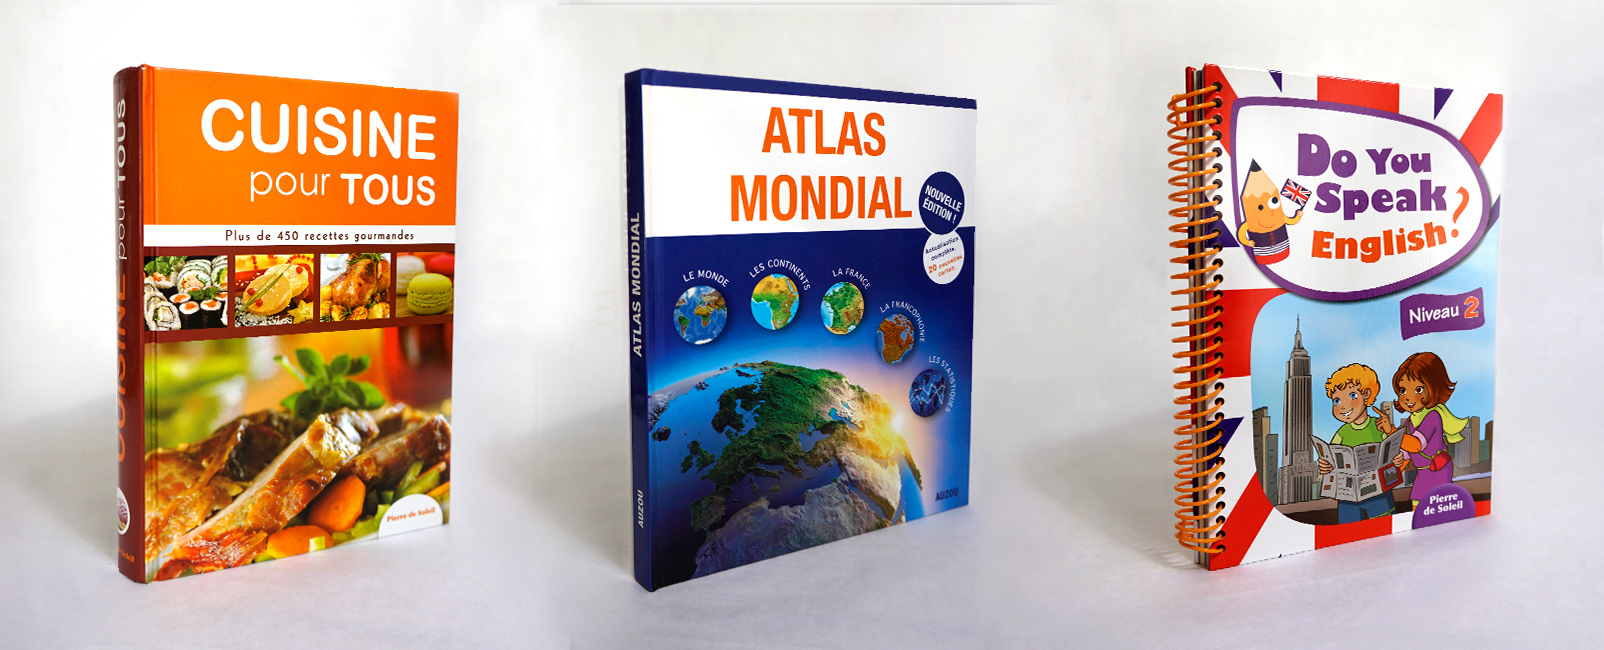 Design couvertures de livres : Atlas, recettes et cahier d'anglais